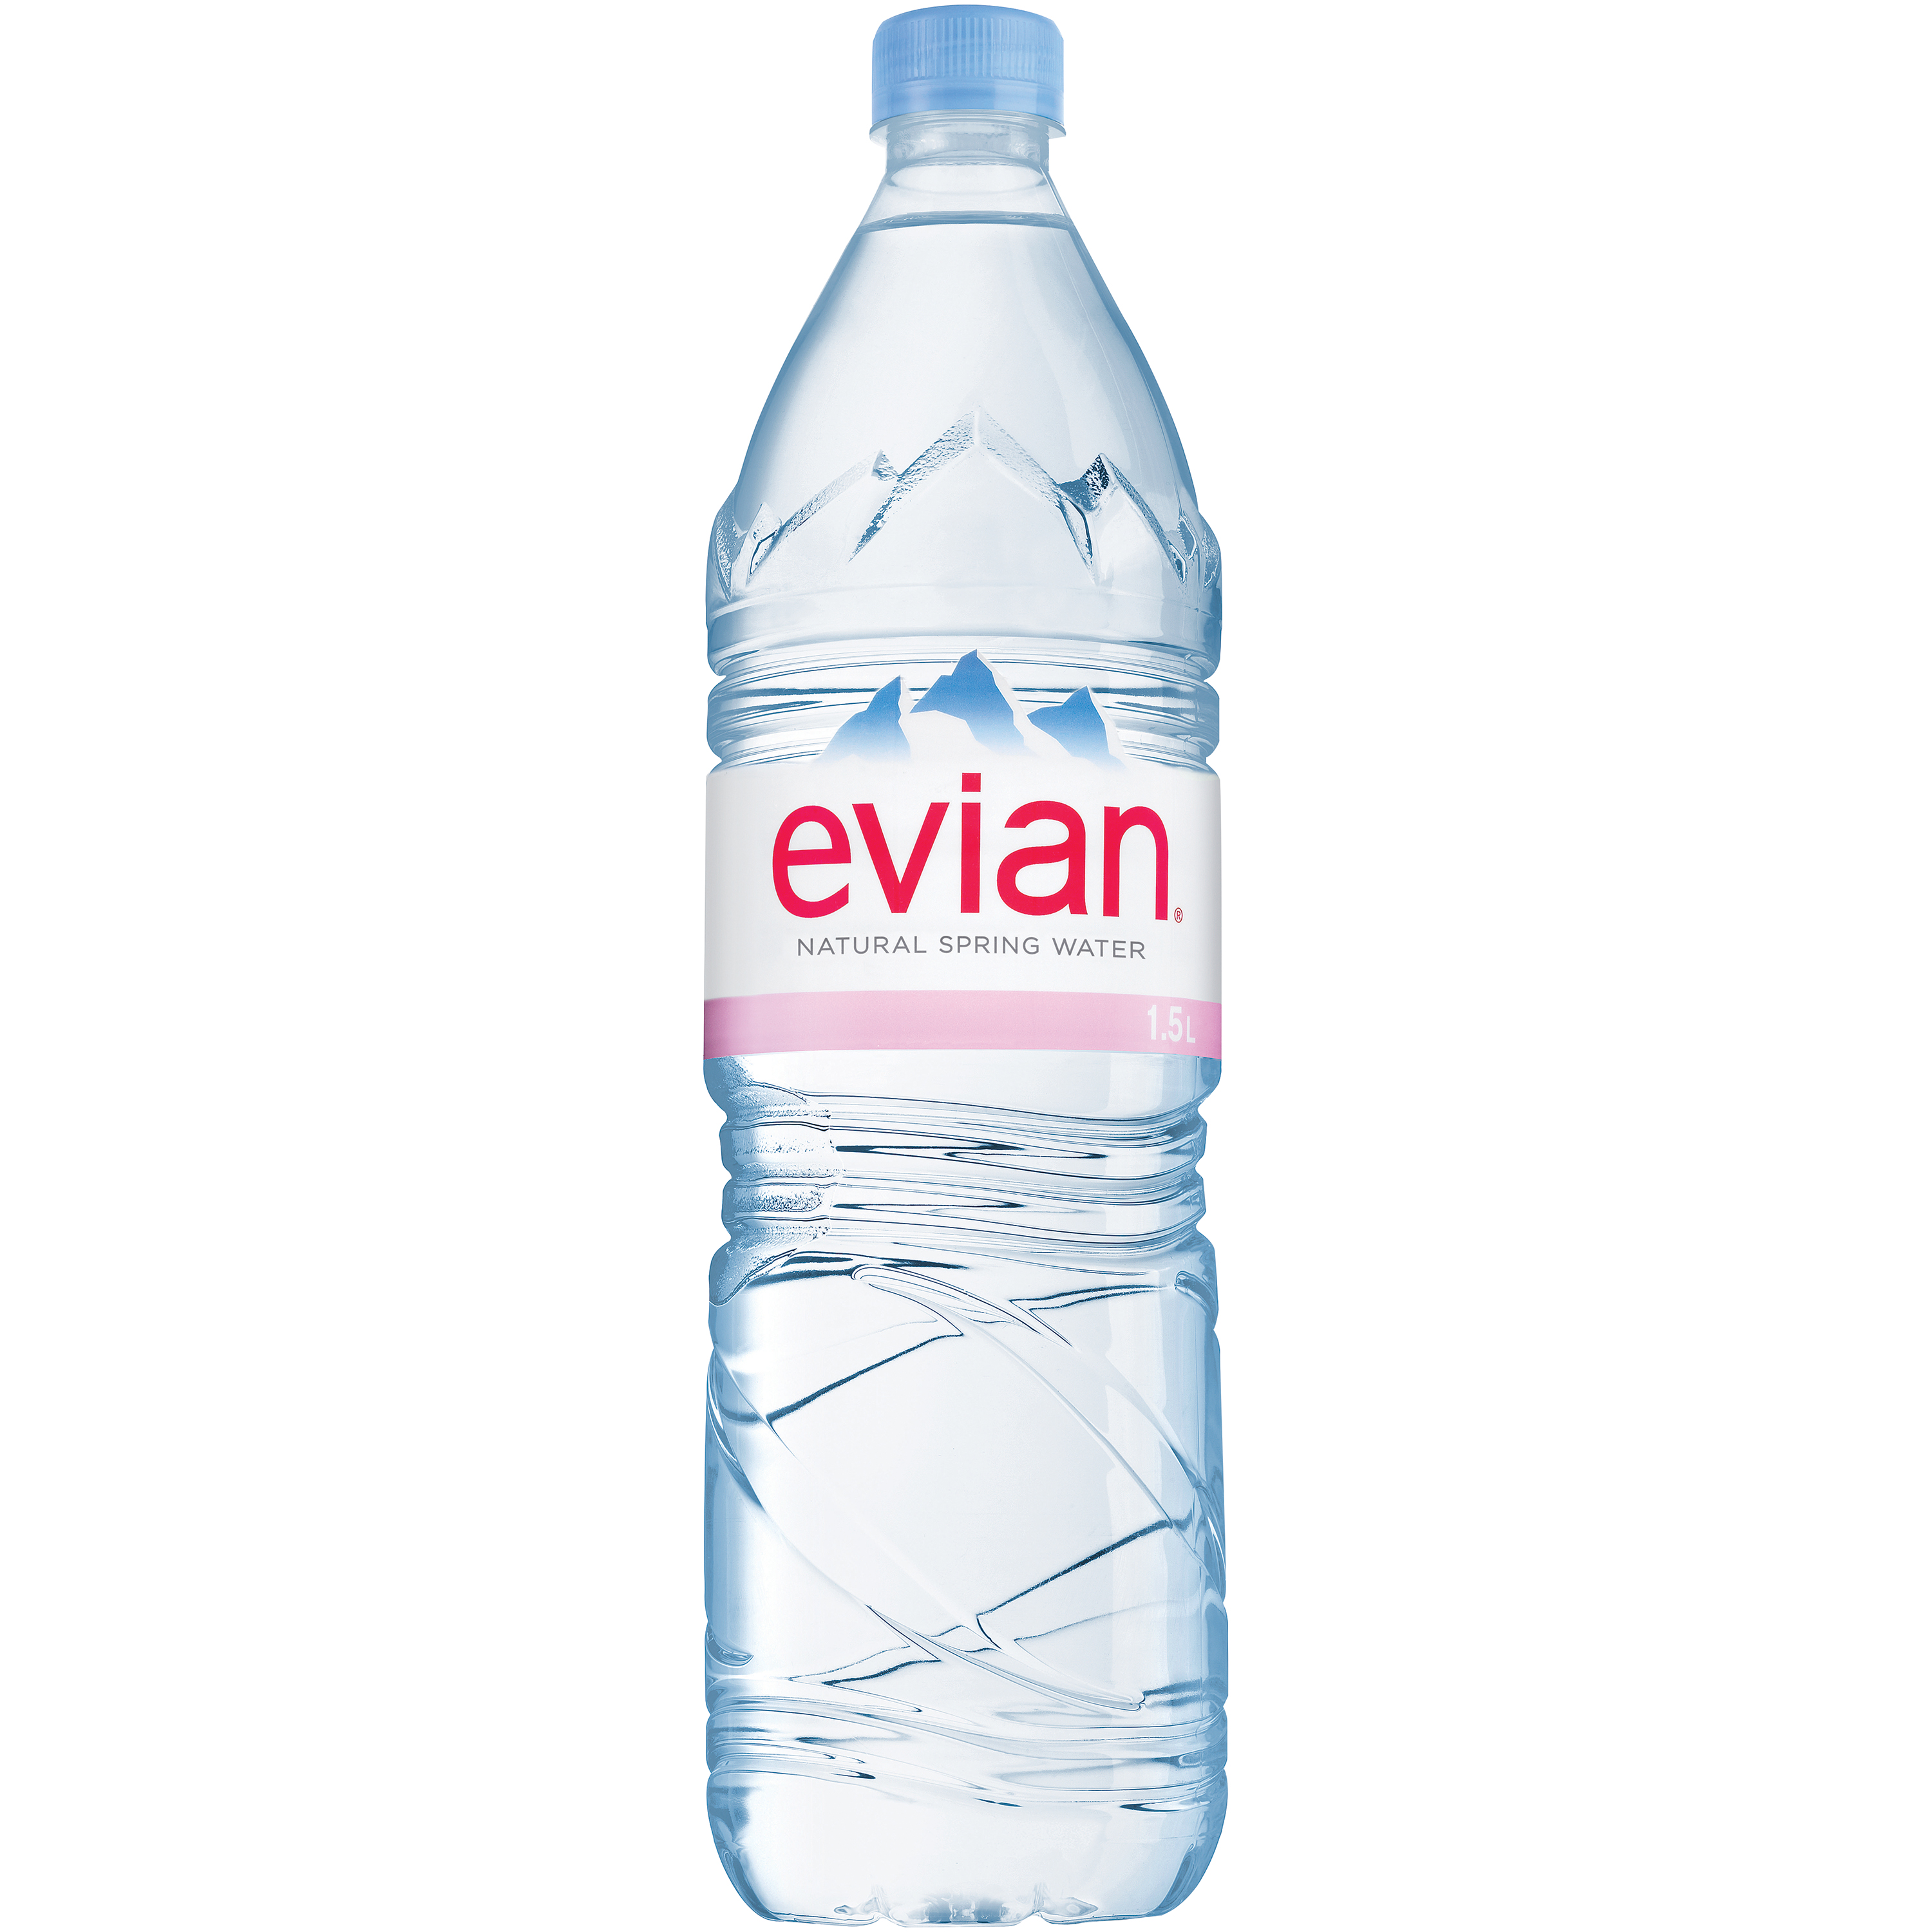 Free photo: Evian water bottles.